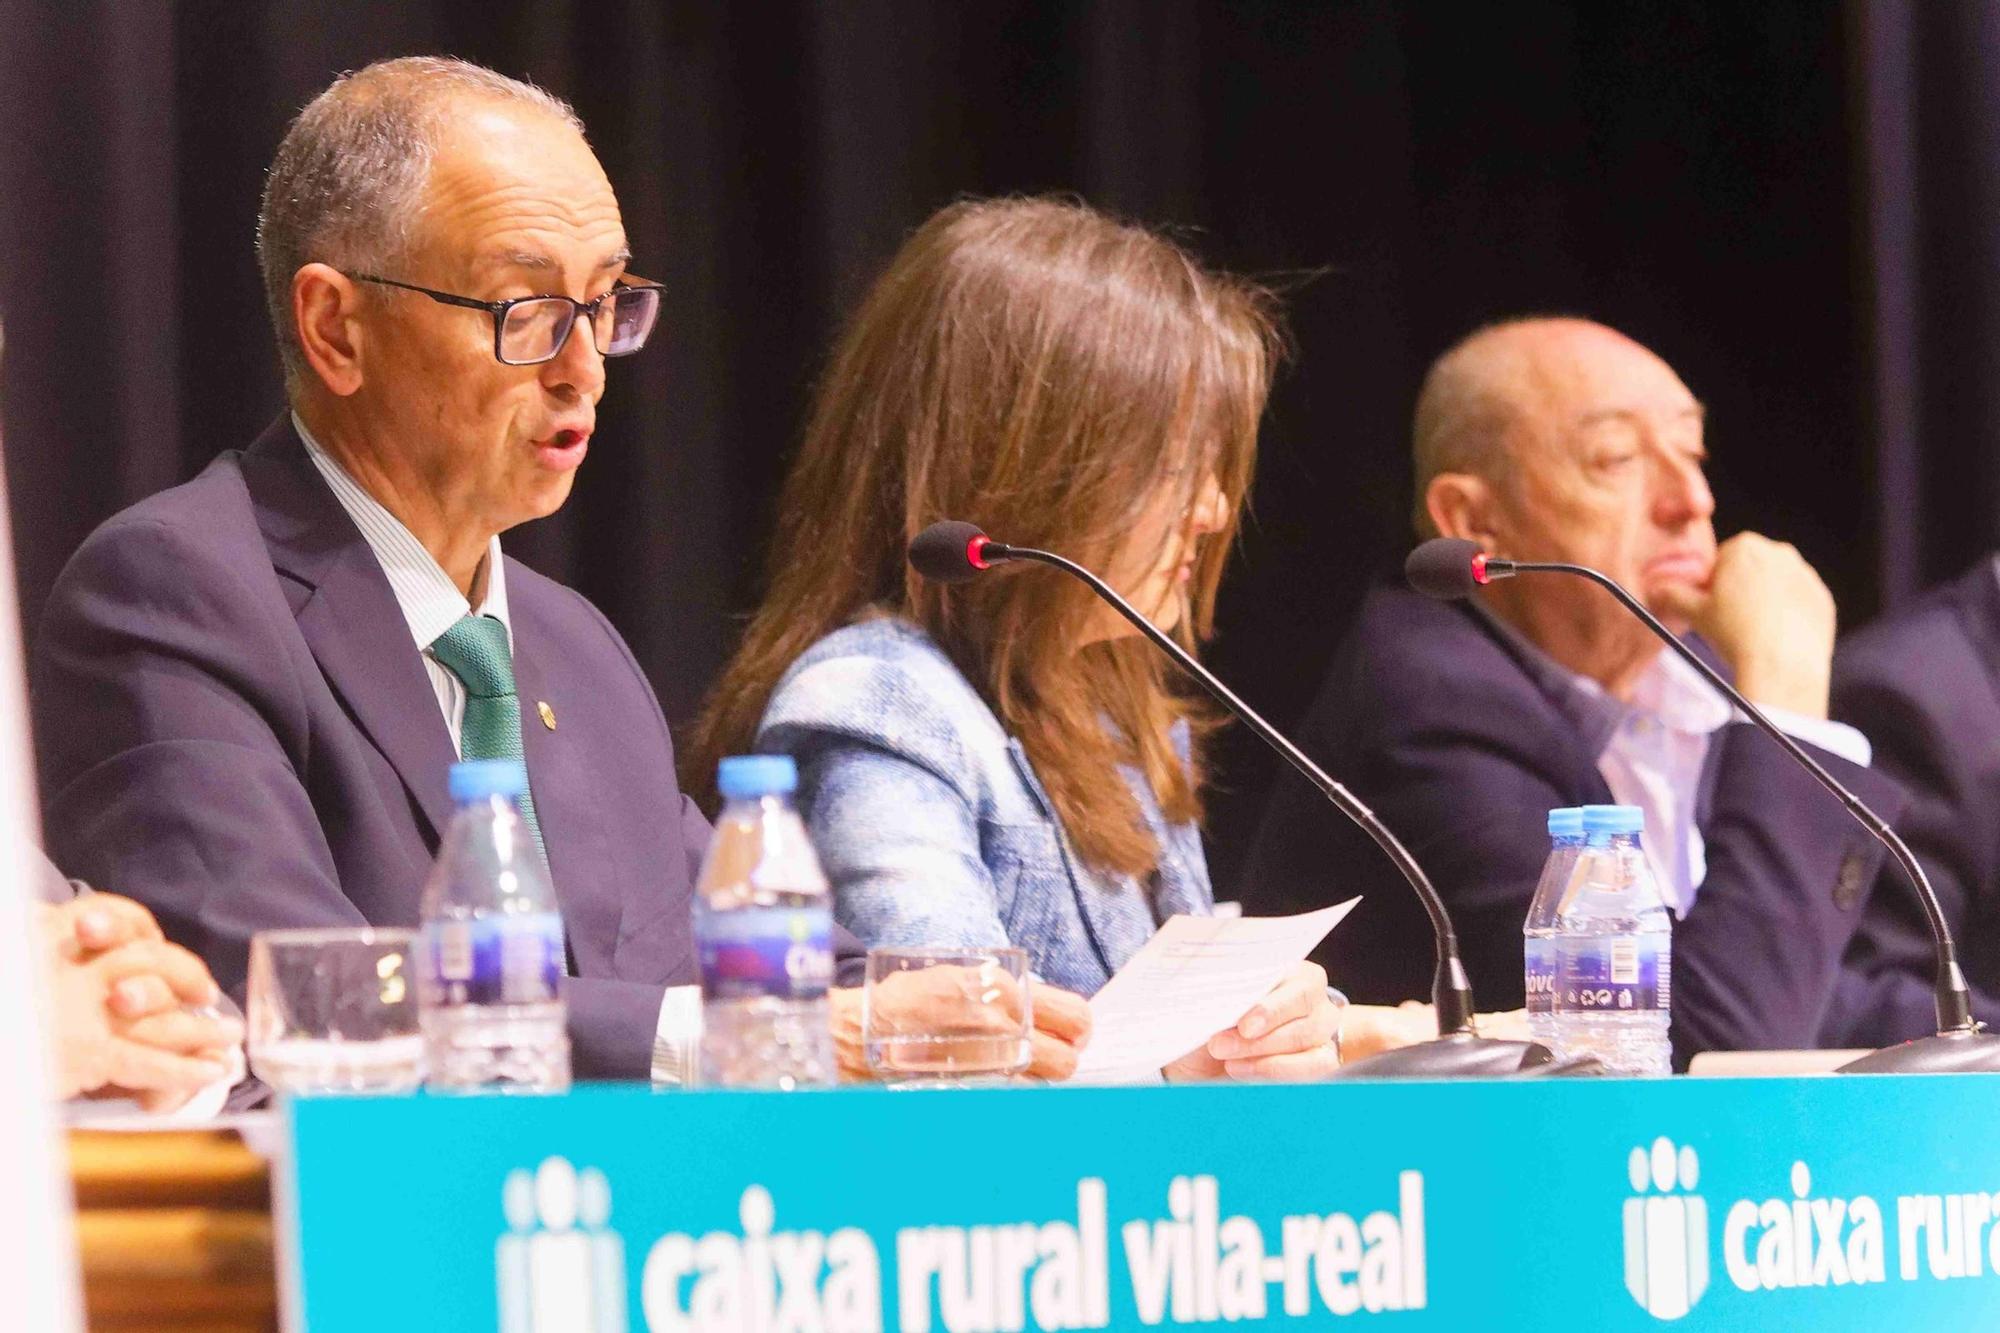 Las imágenes de la asamblea general anual de Caixa Rural Vila-real